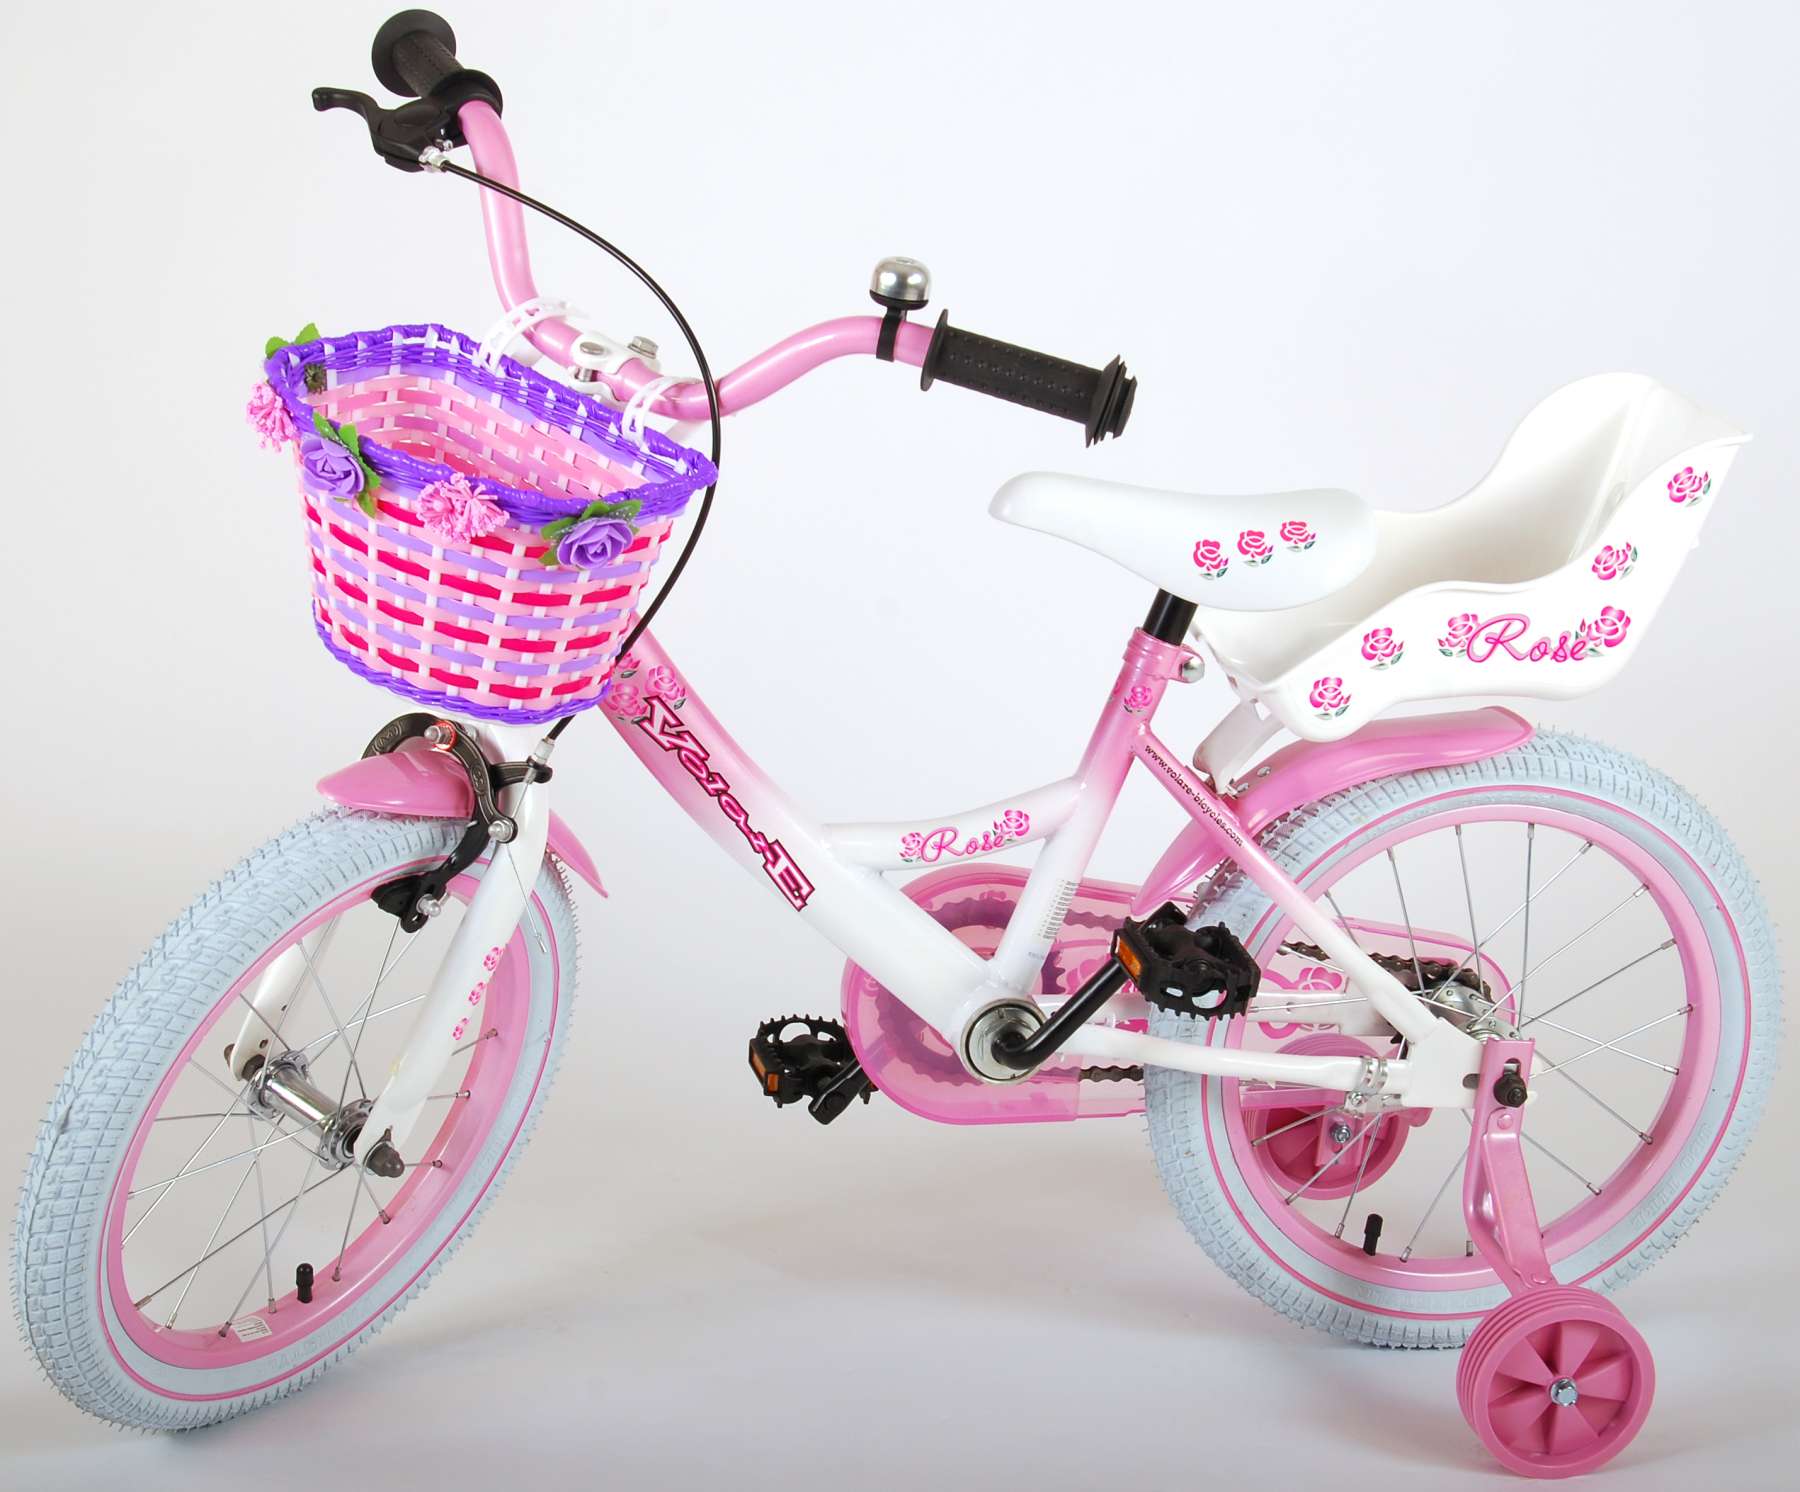 Kinderfahrrad Rose für Mädchen Fahrrad 16 Zoll Kinderrad in Pink/Weiß